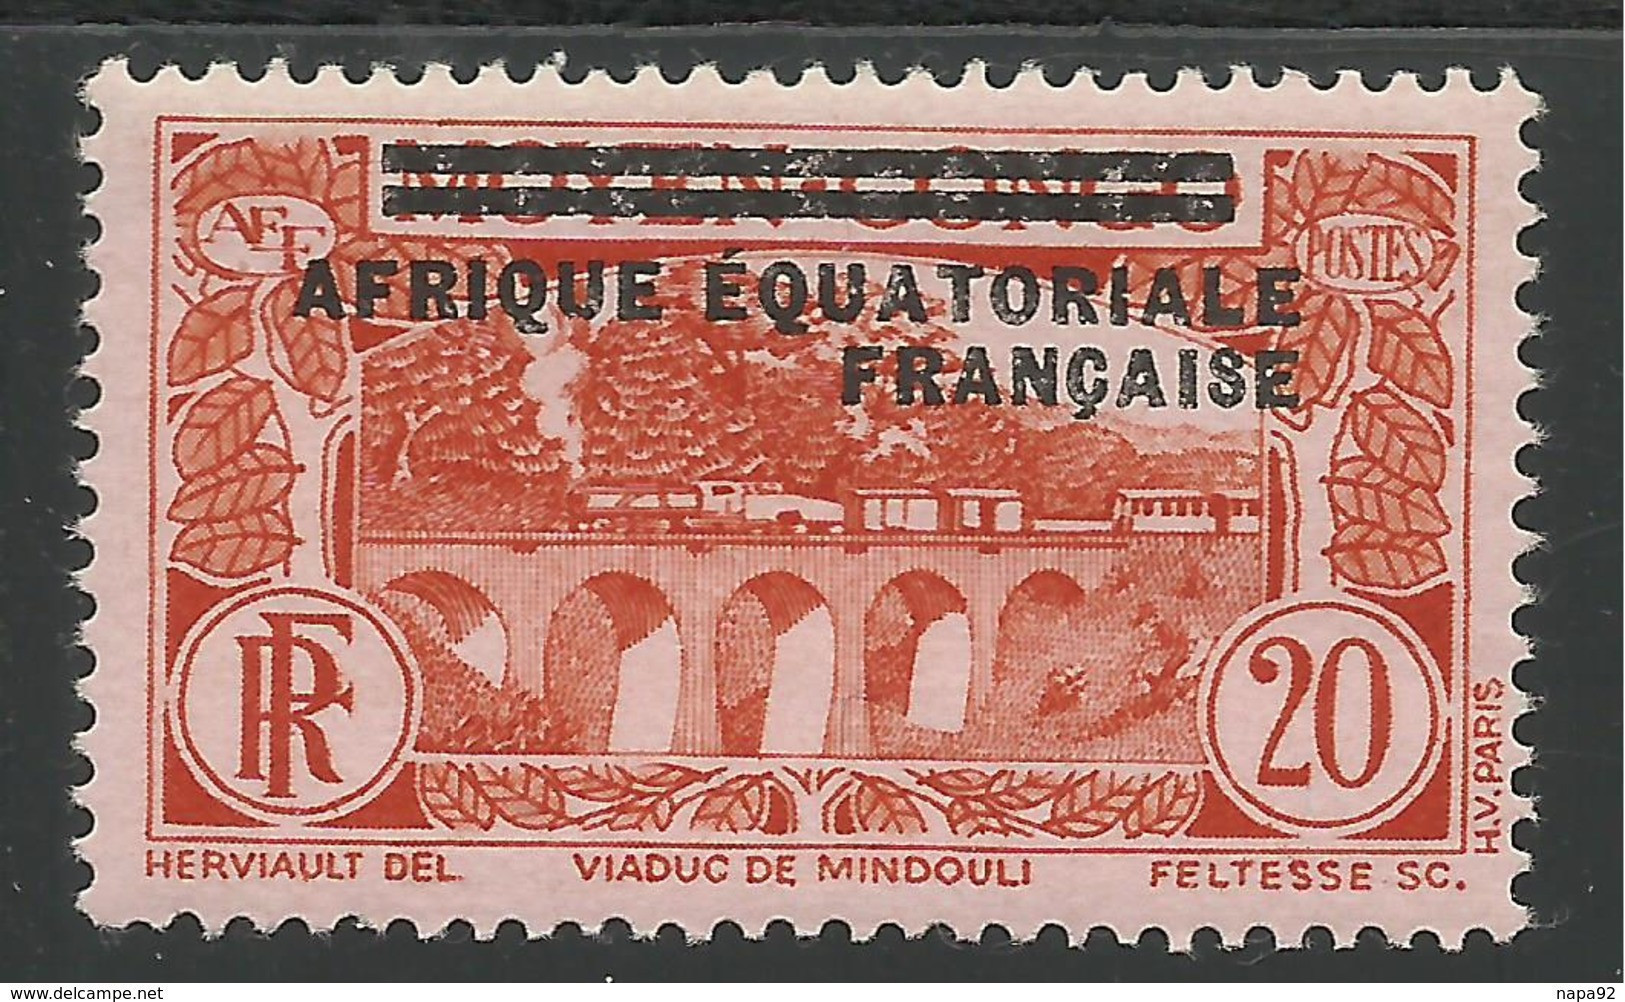 AFRIQUE EQUATORIALE FRANCAISE - AEF - A.E.F. - 1936 - YT 7** - Ungebraucht